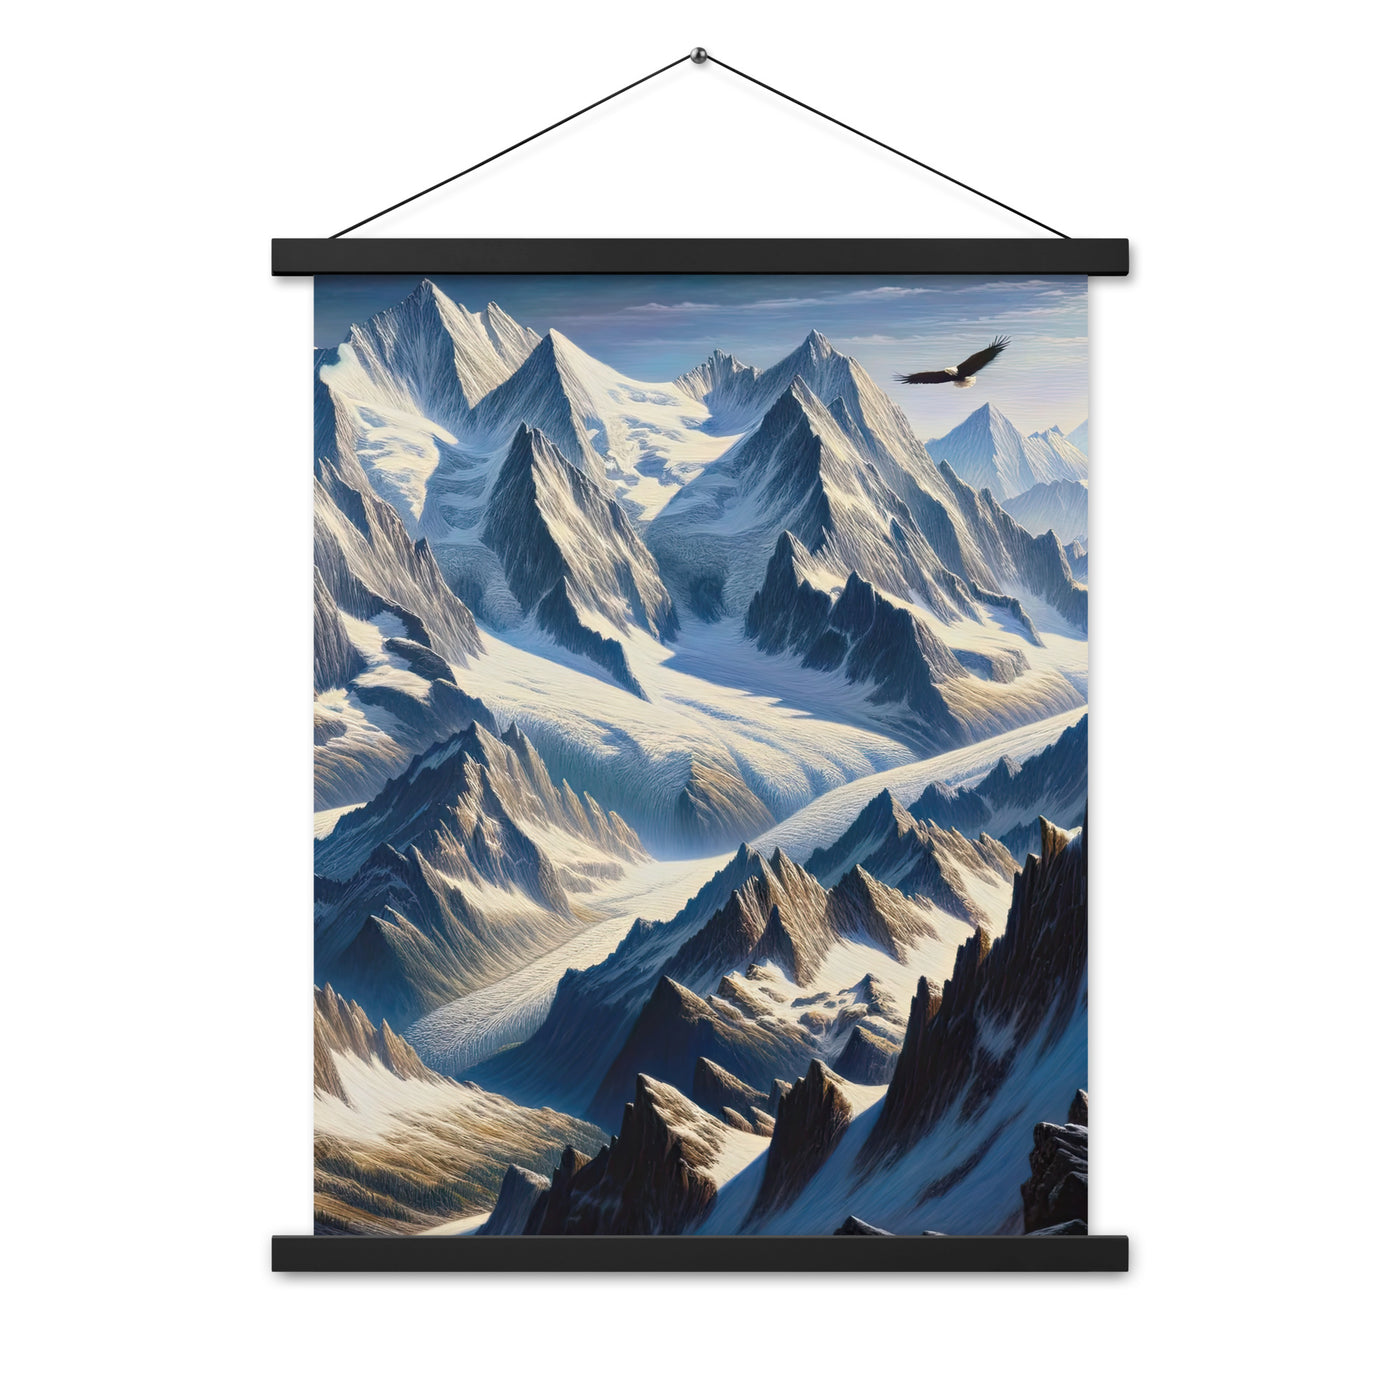 Ölgemälde der Alpen mit hervorgehobenen zerklüfteten Geländen im Licht und Schatten - Premium Poster mit Aufhängung berge xxx yyy zzz 45.7 x 61 cm